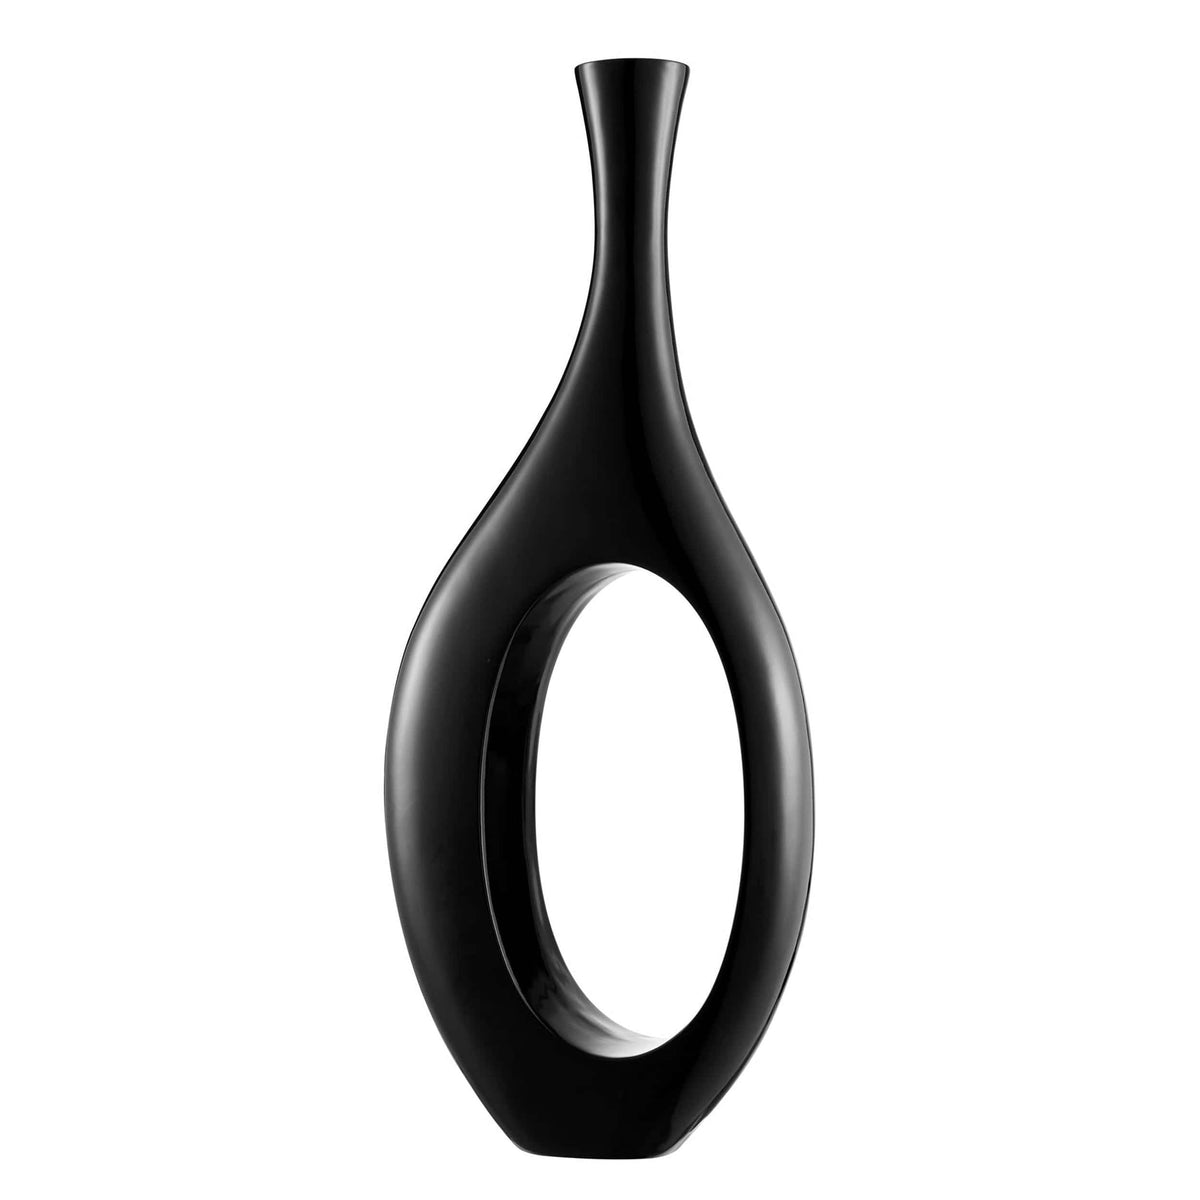 Finesse Decor Trombone Vase in Black / Small